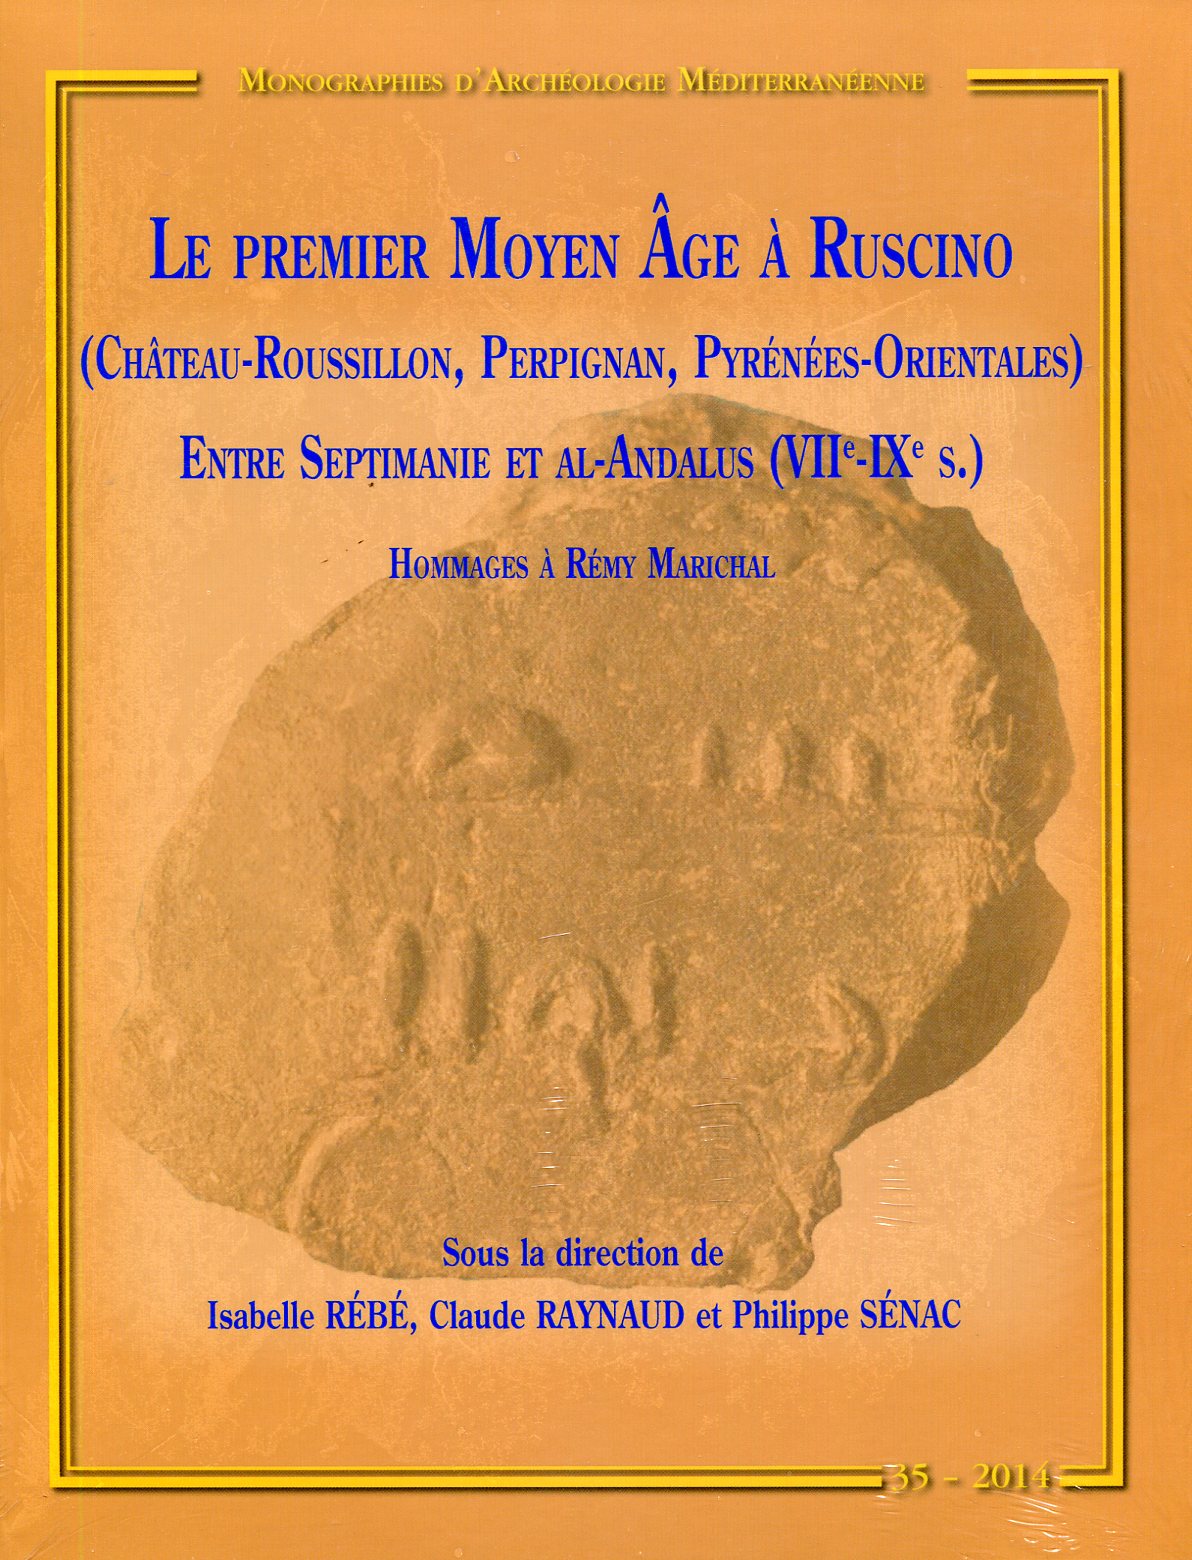 Le premier Moyen Age à Ruscino (Château-Roussillon, Perpignan, Pyrénées-Orientales) entre Septimanie et Al-Andalus (VIIe-IXe s.). Hommages à Rémy Marichal, (MAM 35), 2014.